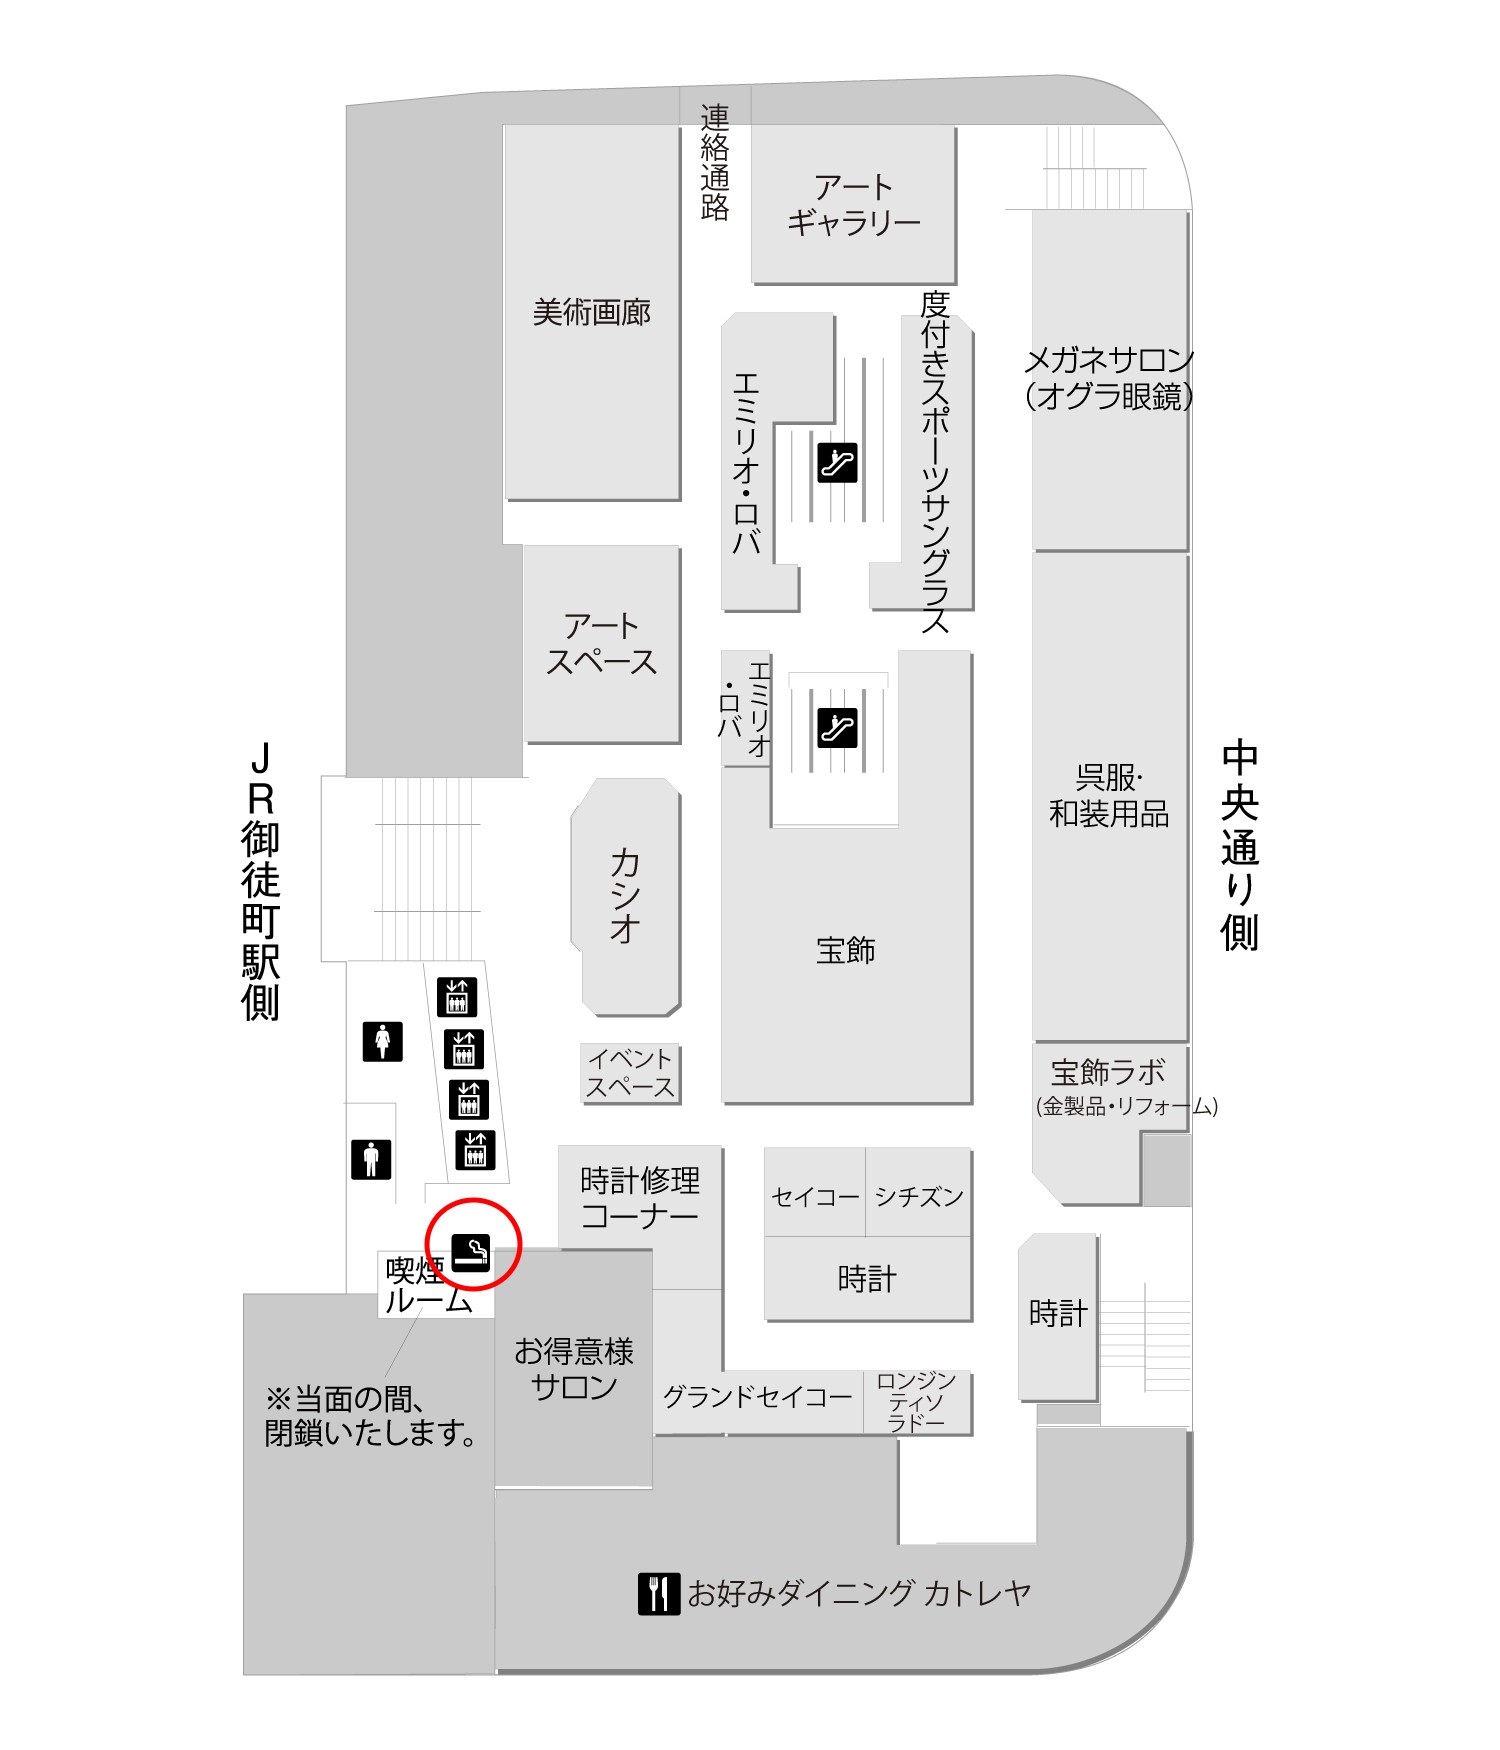 松坂屋上野店のフロアマップ